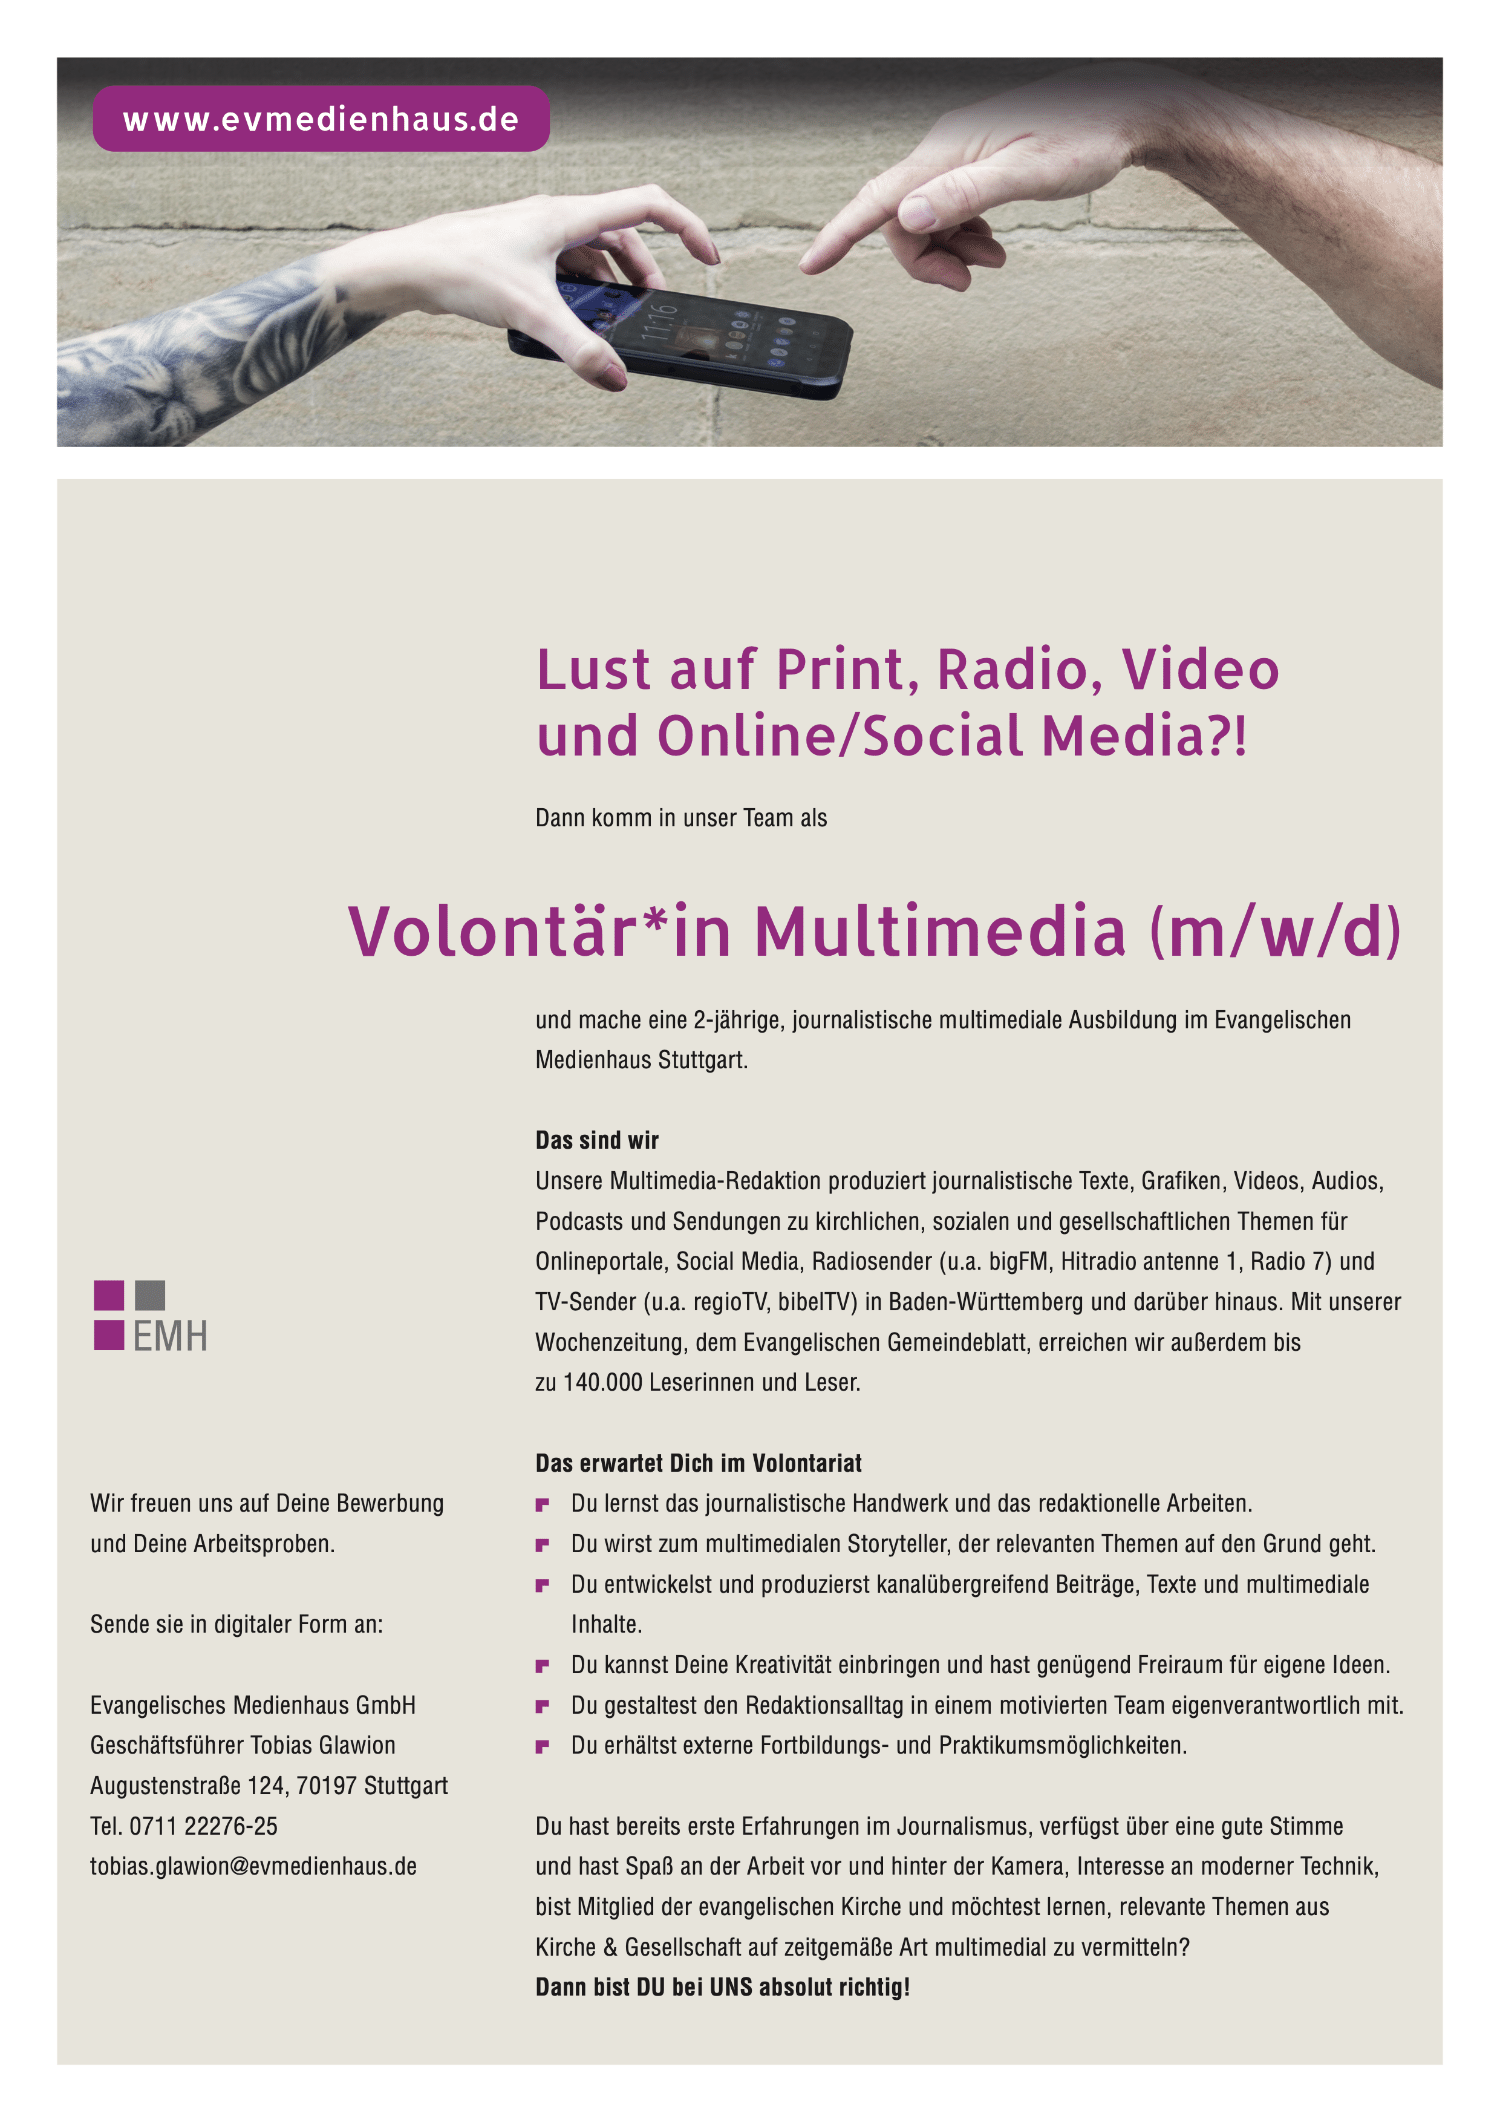 Evangelisches Medienhaus sucht Volontär*in Multimedia (m/w/d)